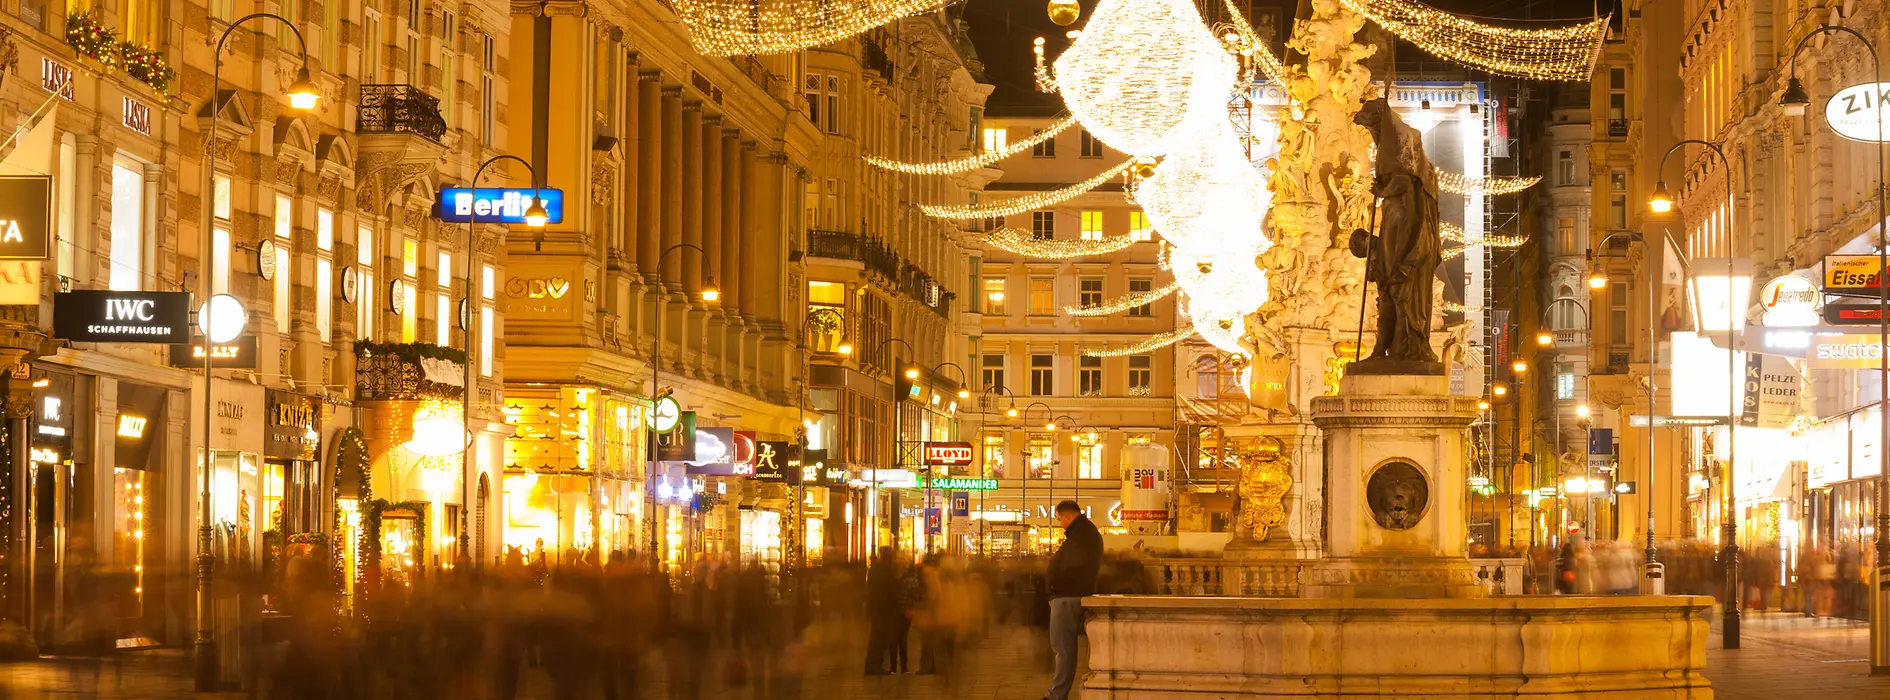 Illuminations de Noël dans une rue commerçante viennoise